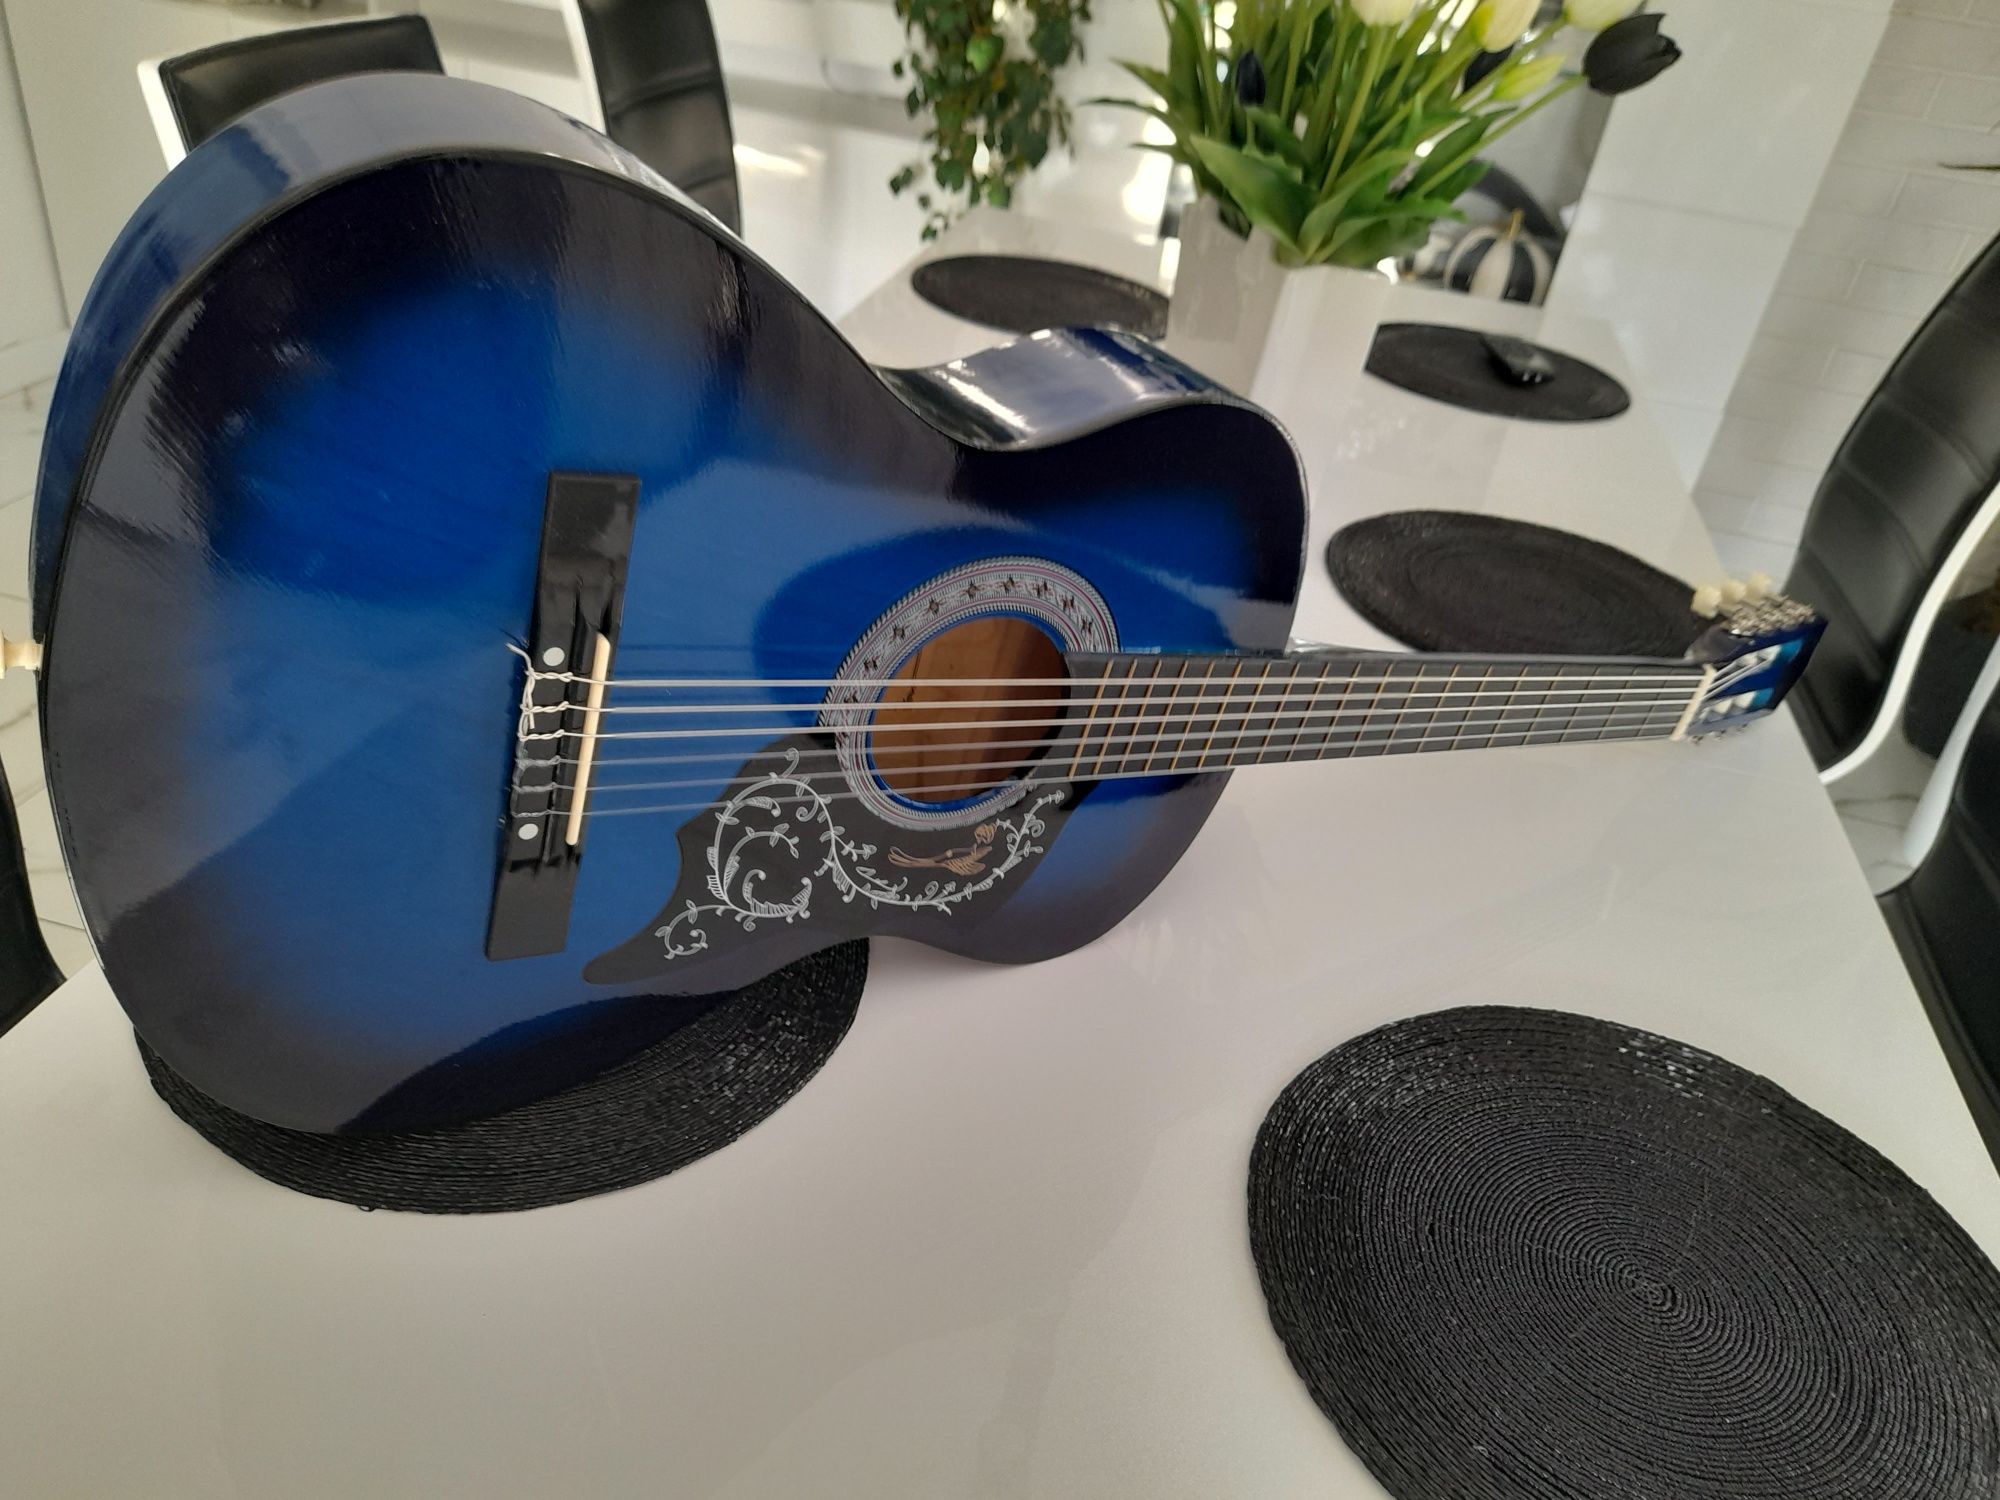 Gitara klasyczna castelo g1 rozmiar 3/4 niebieski połysk